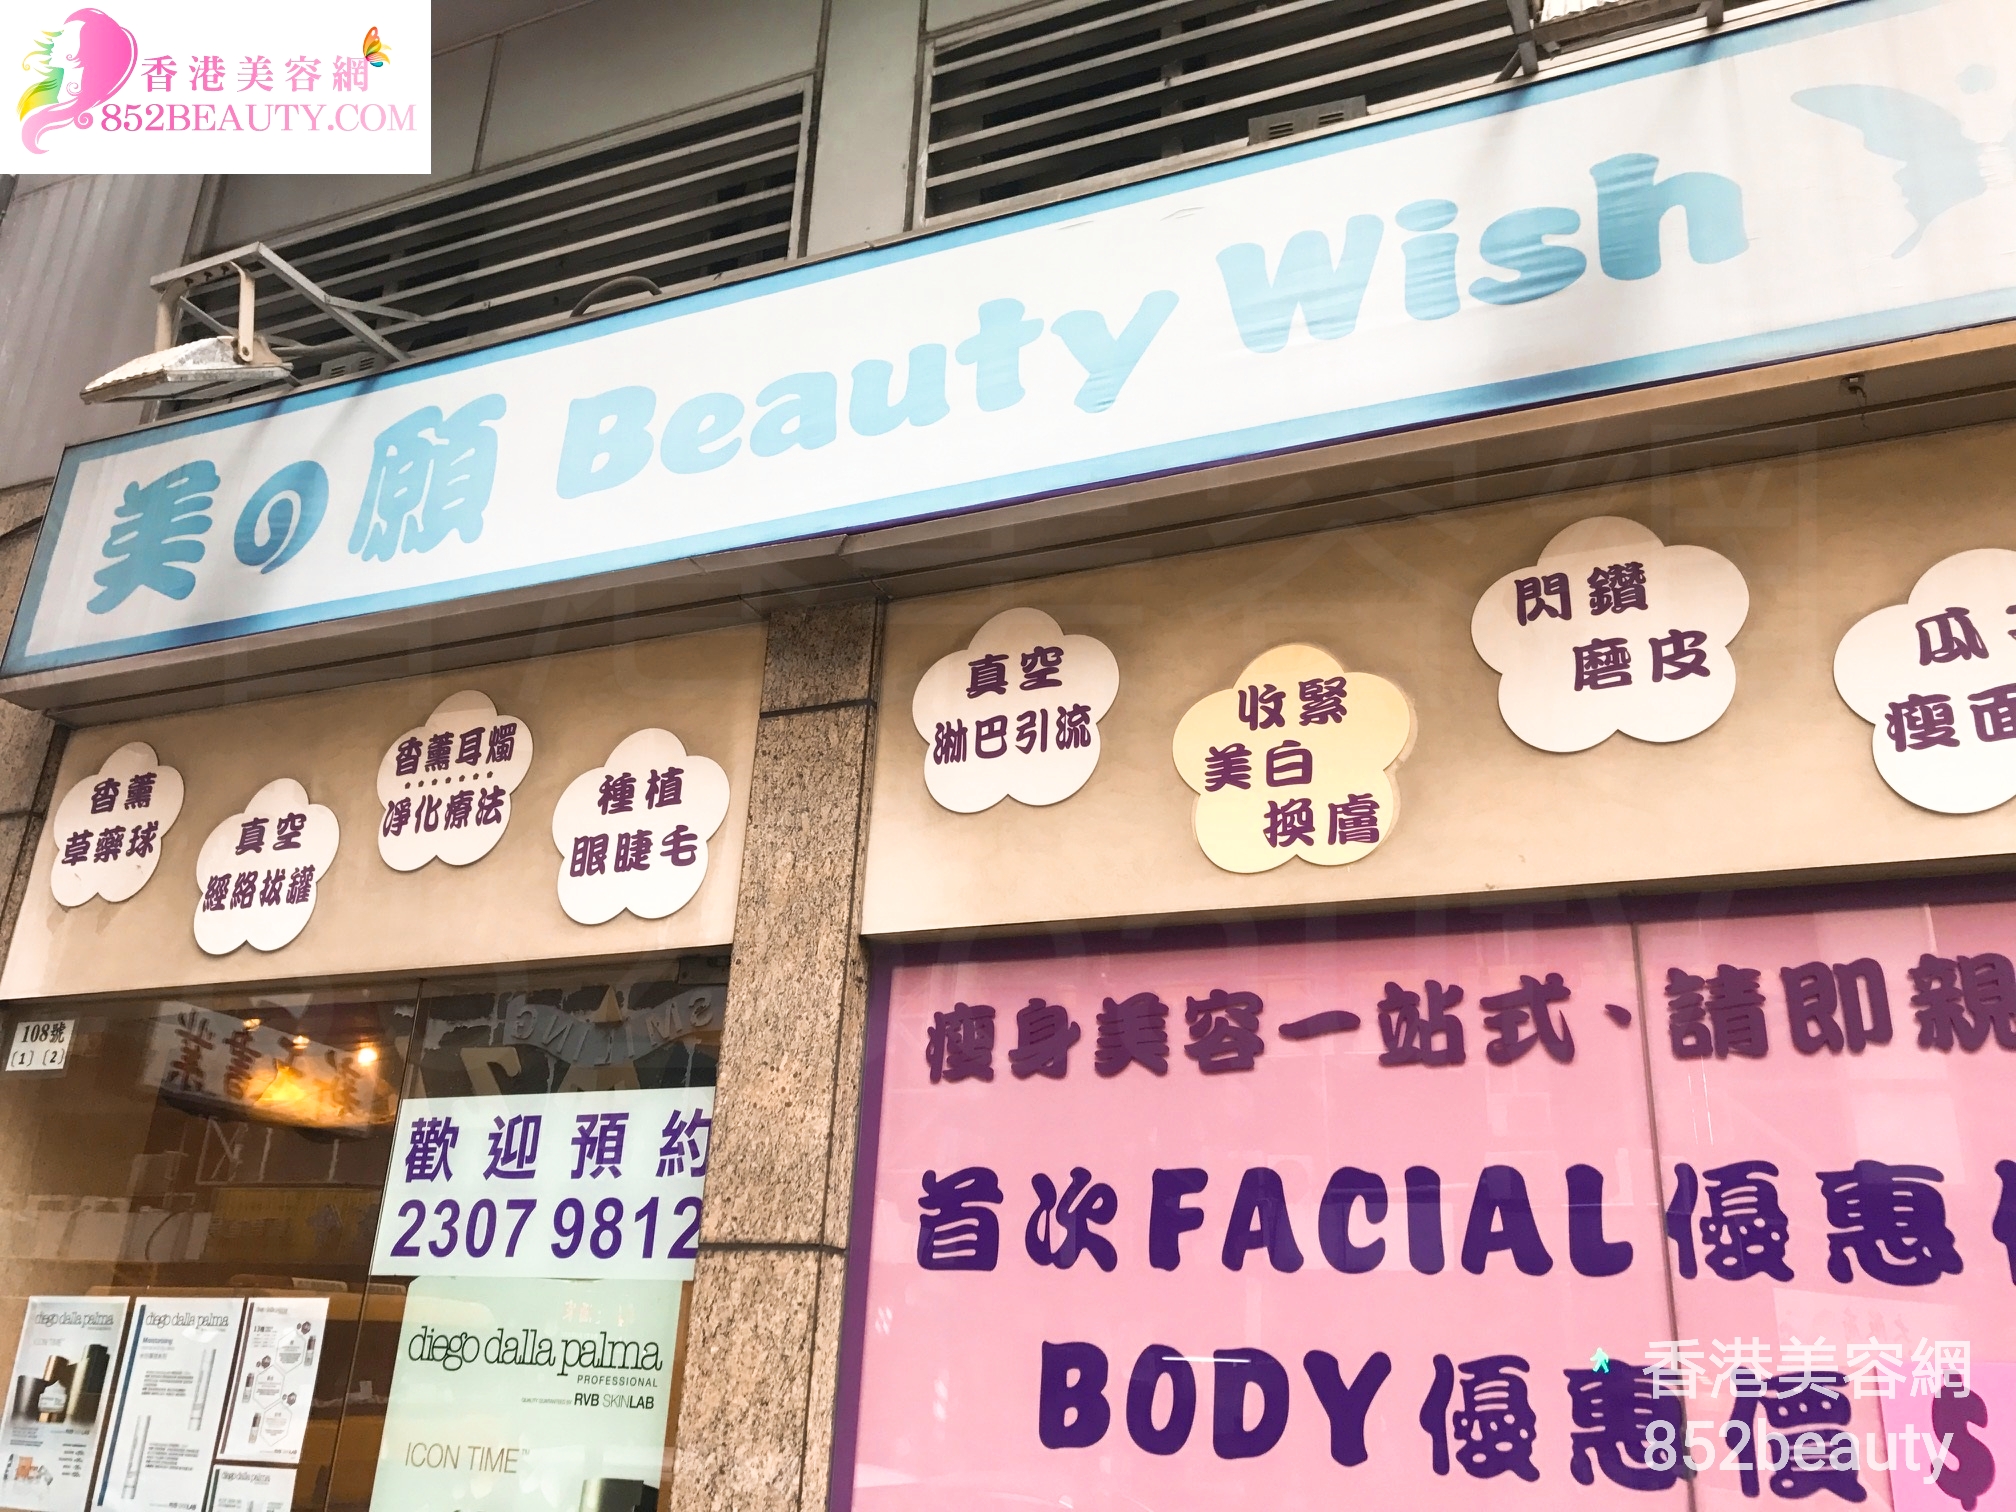 香港美容網 Hong Kong Beauty Salon 美容院 / 美容師: 美の願 Beauty Wish